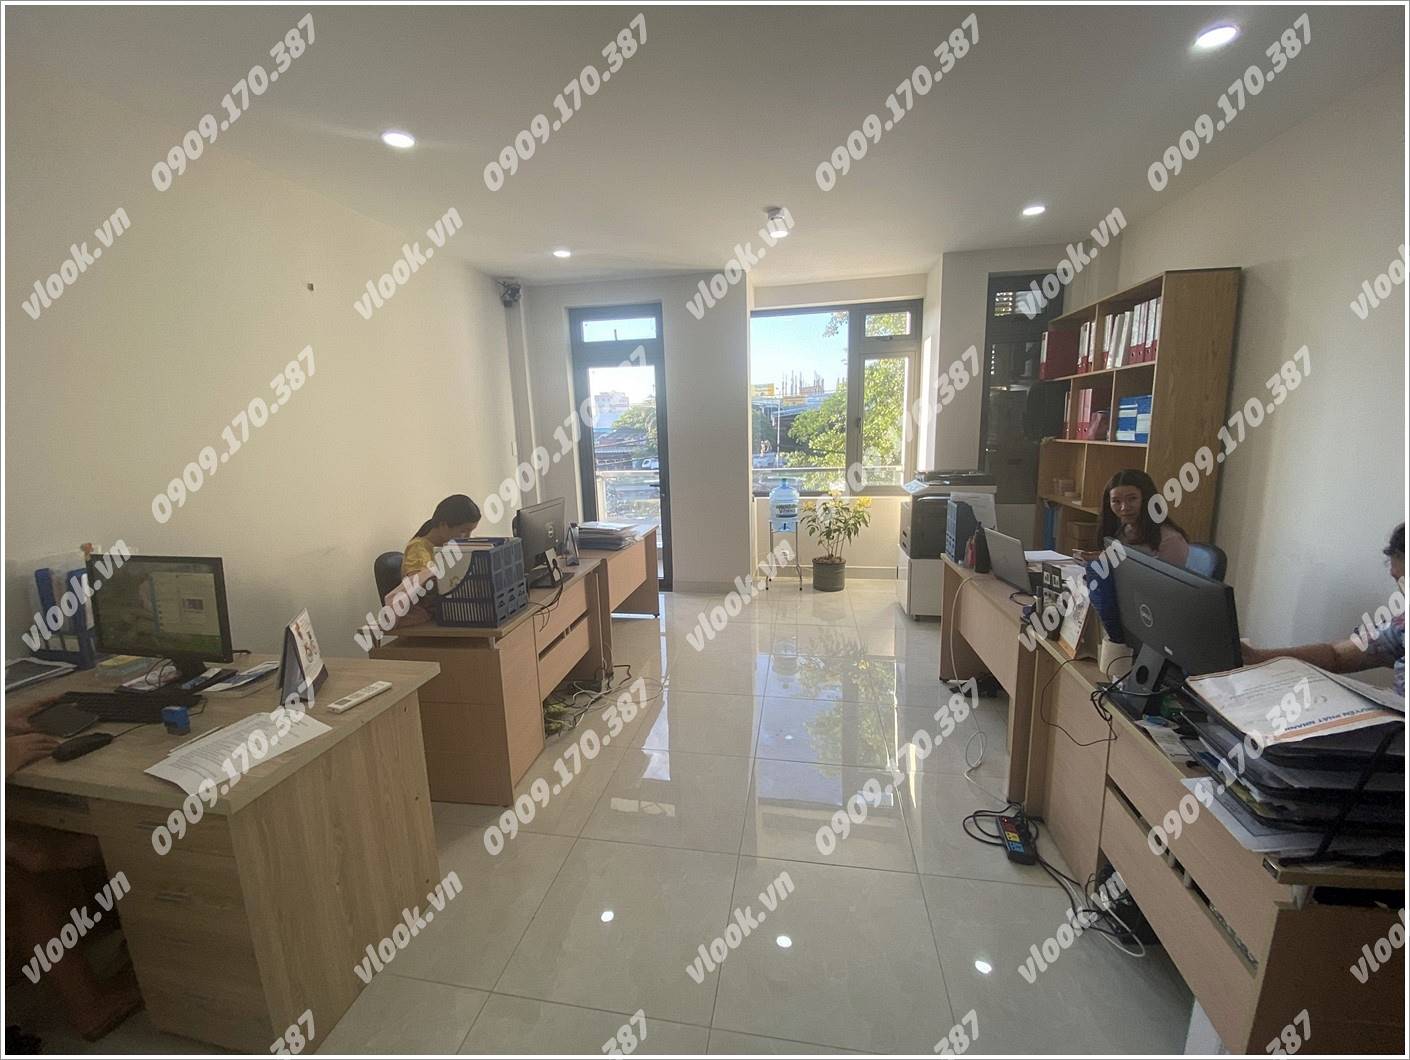 Cao ốc văn phòng cho thuê toà nhà Building 55 Nguyễn Văn Linh, Quận 7, TPHCM - vlook.vn